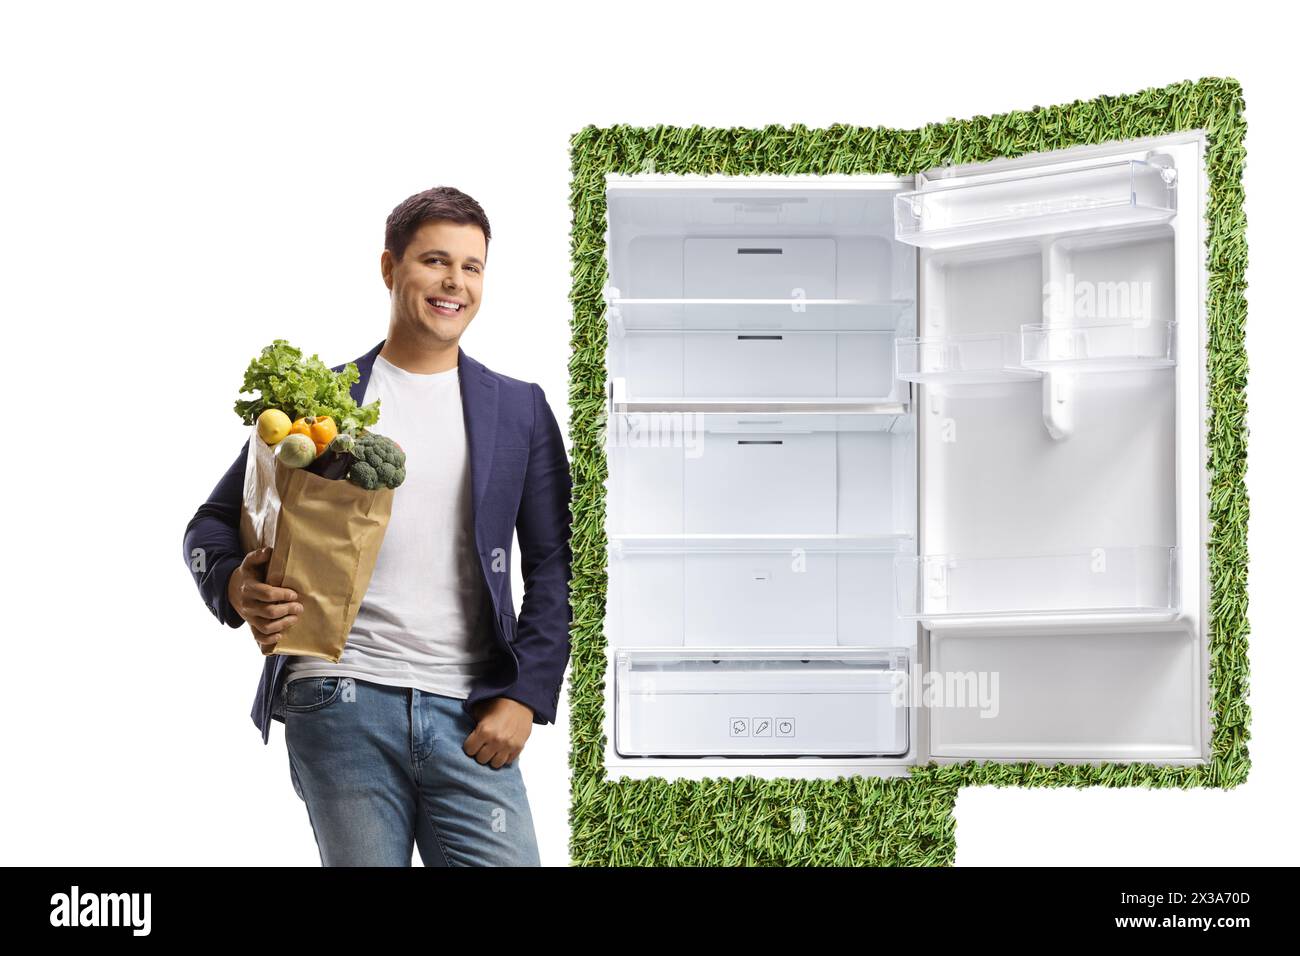 Junger Mann, der eine Einkaufstasche hält und sich auf einen grünen umweltfreundlichen Kühlschrank gestützt hat, der auf weißem Hintergrund isoliert ist Stockfoto